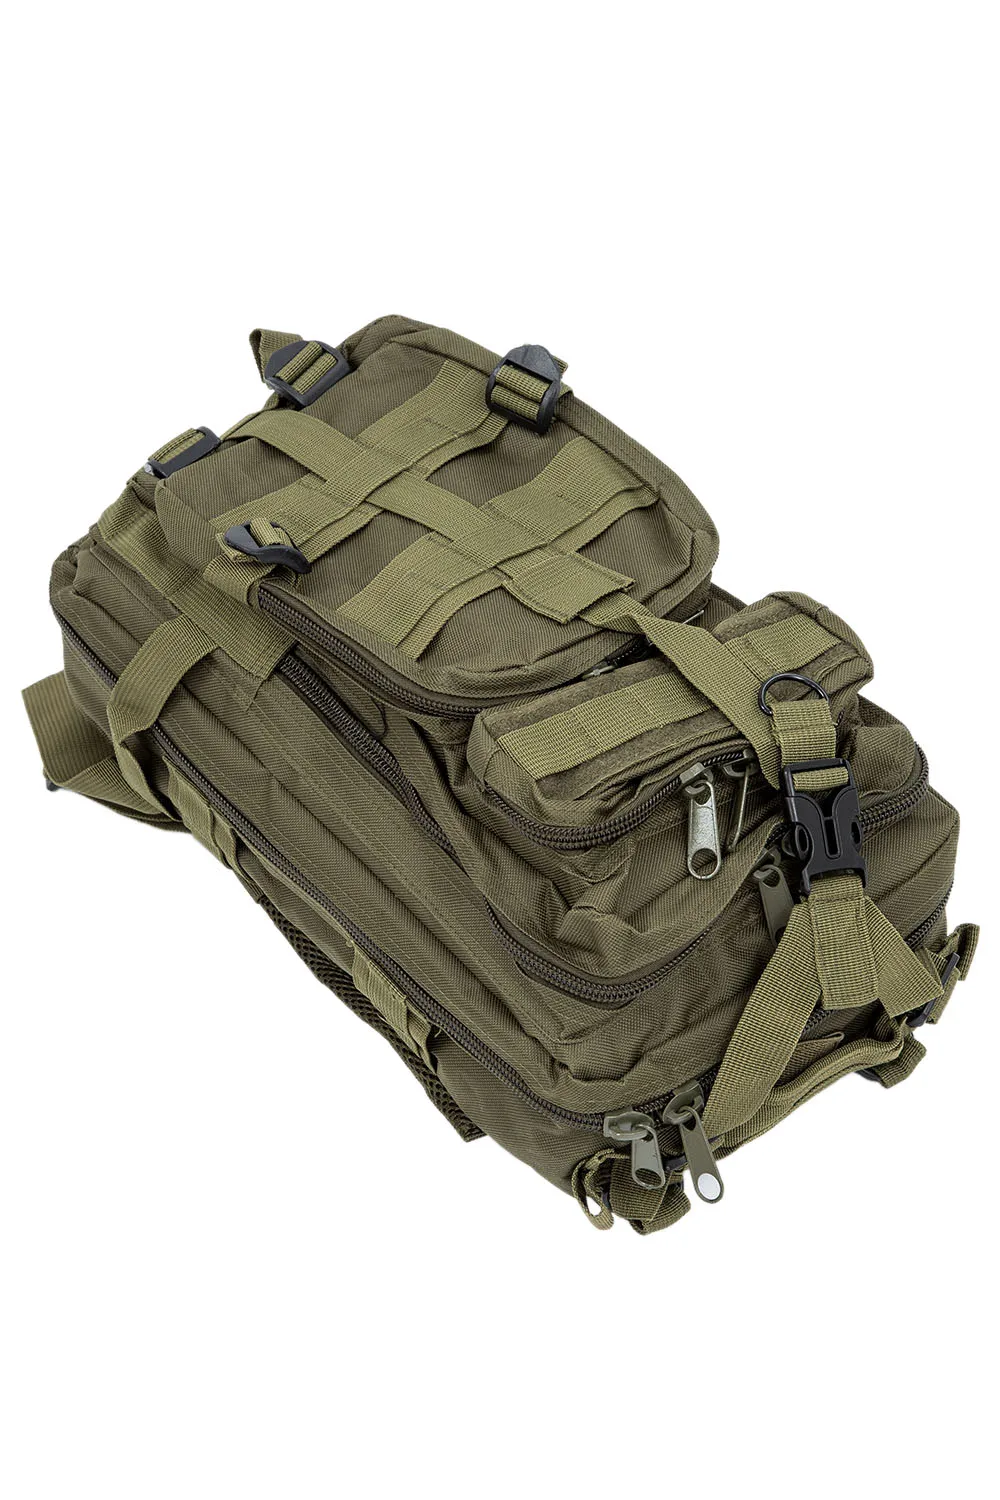 Для мужчин Открытый Рюкзак-для мужчин открытый рюкзак военный тактический рюкзак Кемпинг пеший Туризм Охота, треккинг рюкзак (армейский